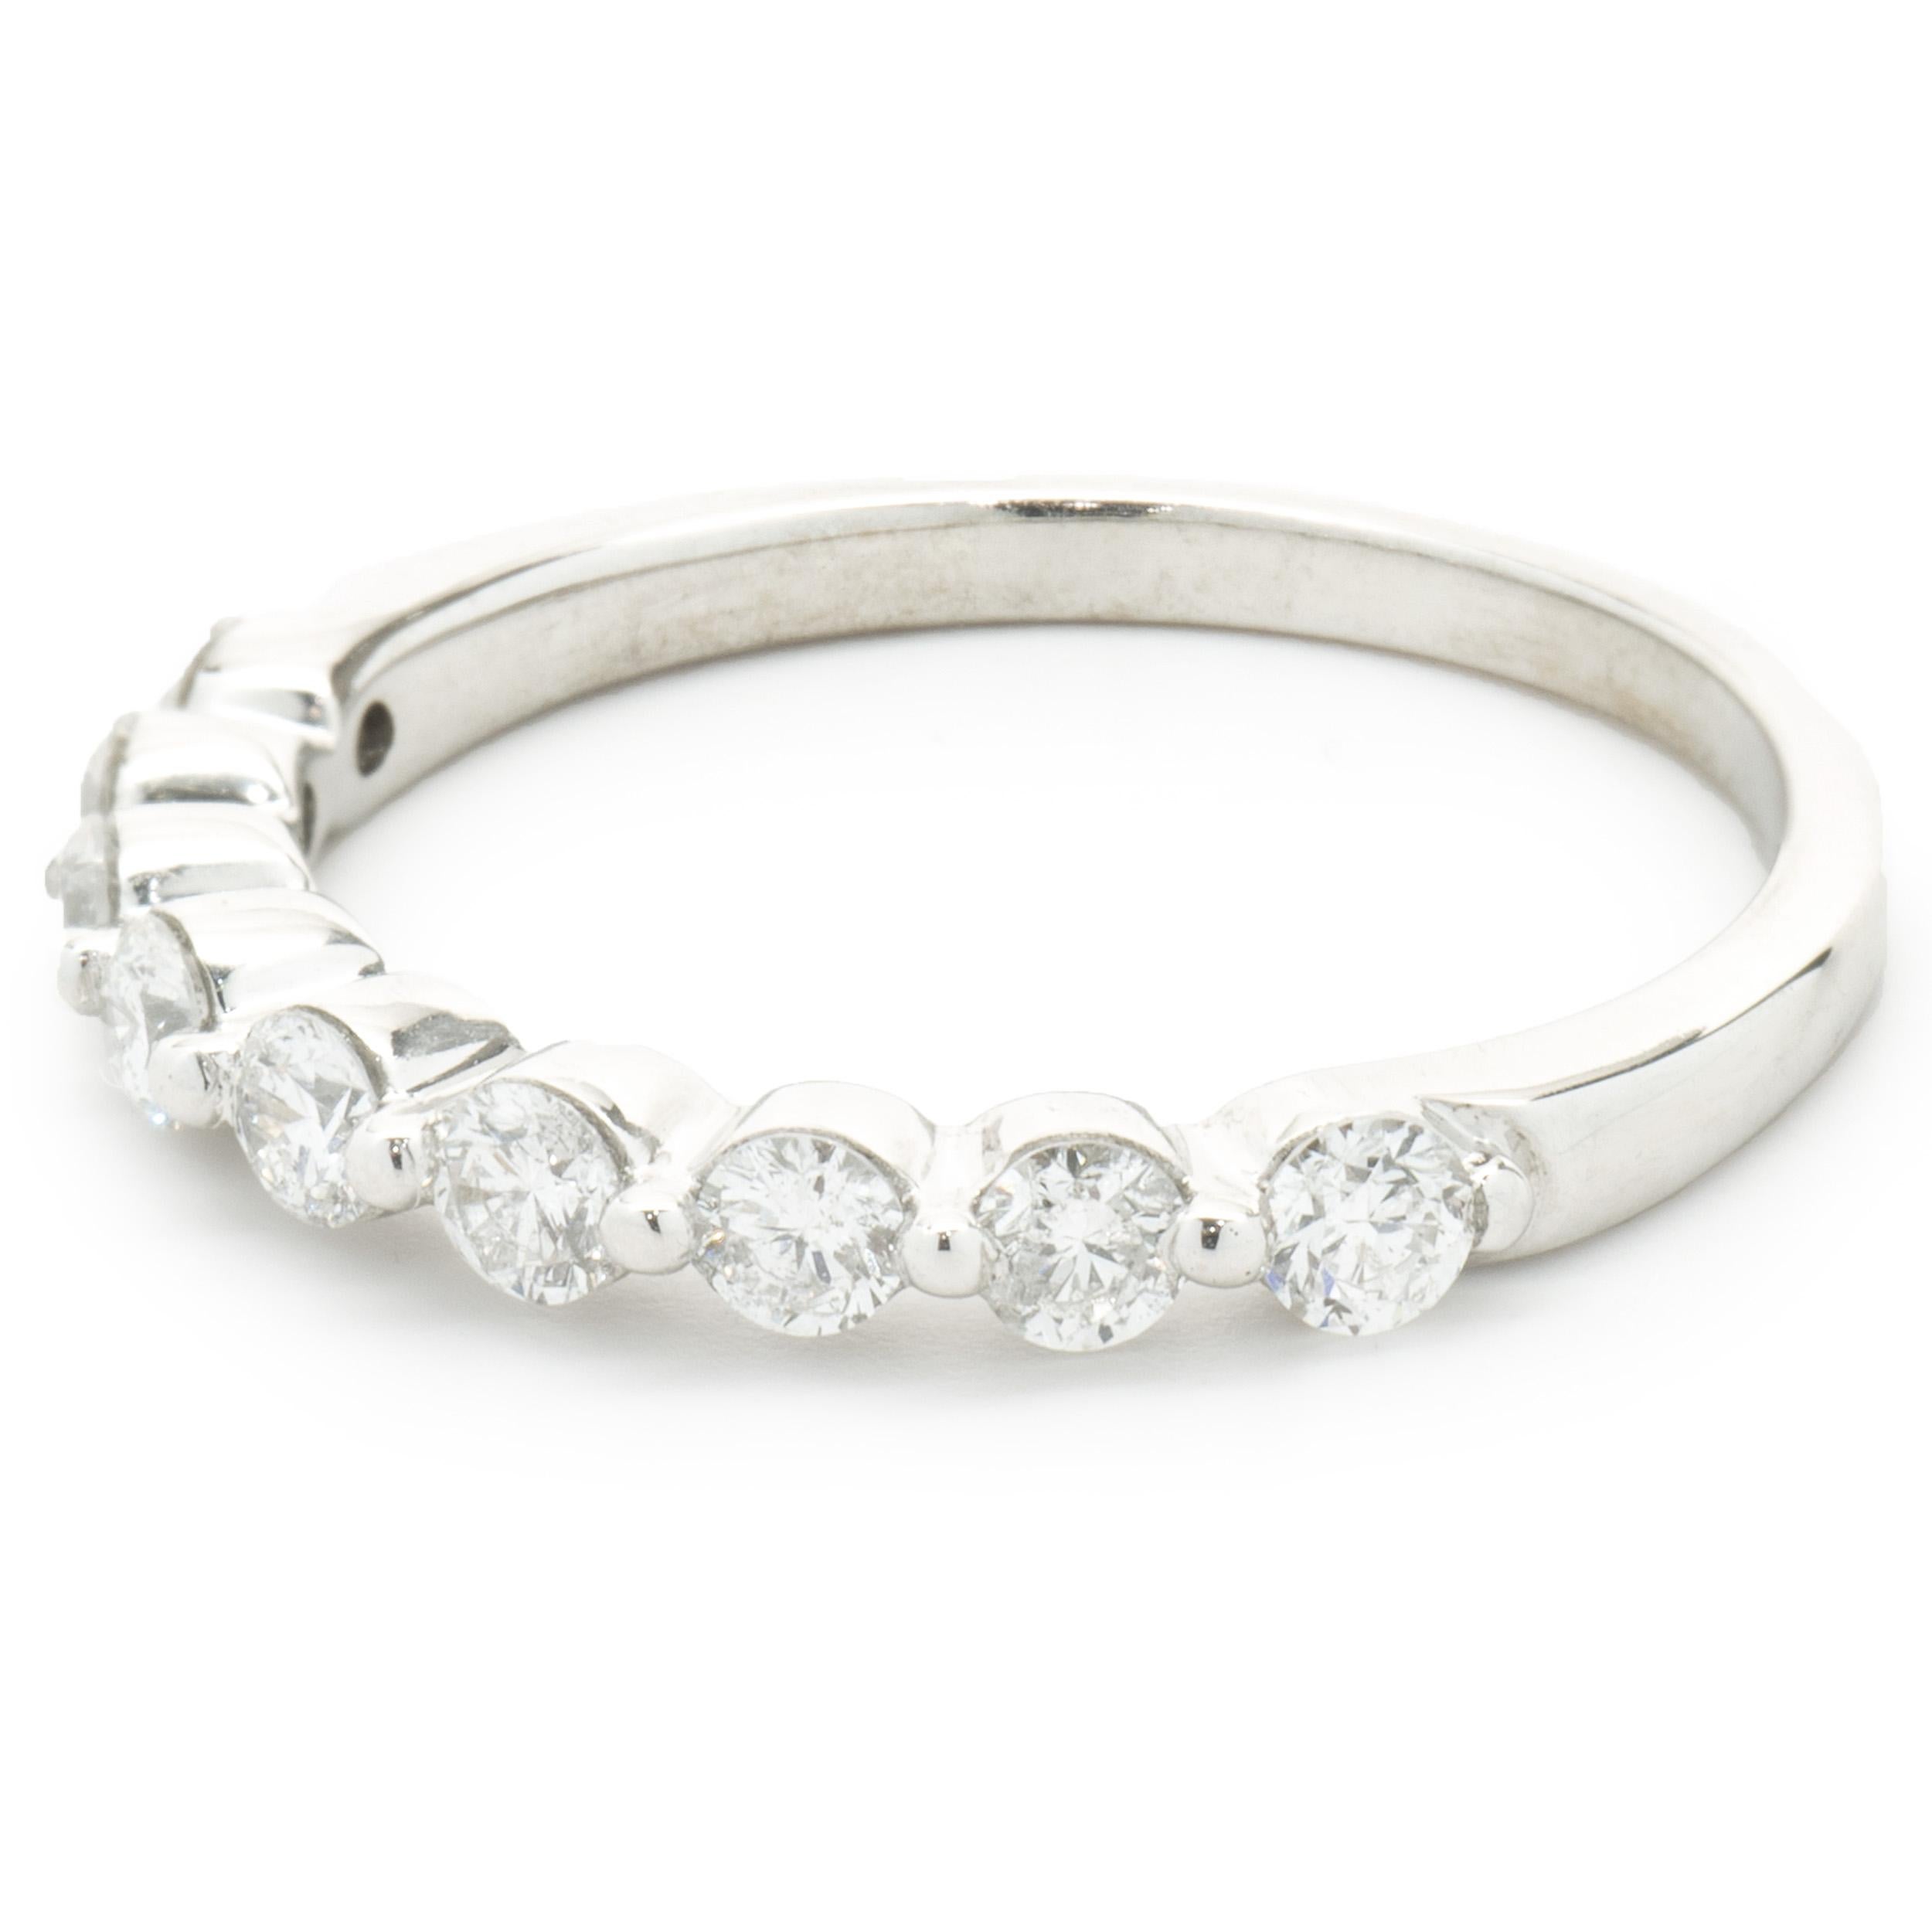 Concepteur : Custom
Matériau : Or blanc 14K
Diamants : 9 diamants ronds de taille brillant = 0,36cttw
Couleur : G
Clarté : SI1
Taille : 6.5
Dimensions : l'anneau mesure 2.10 mm de large.
Poids : 2.12 grammes